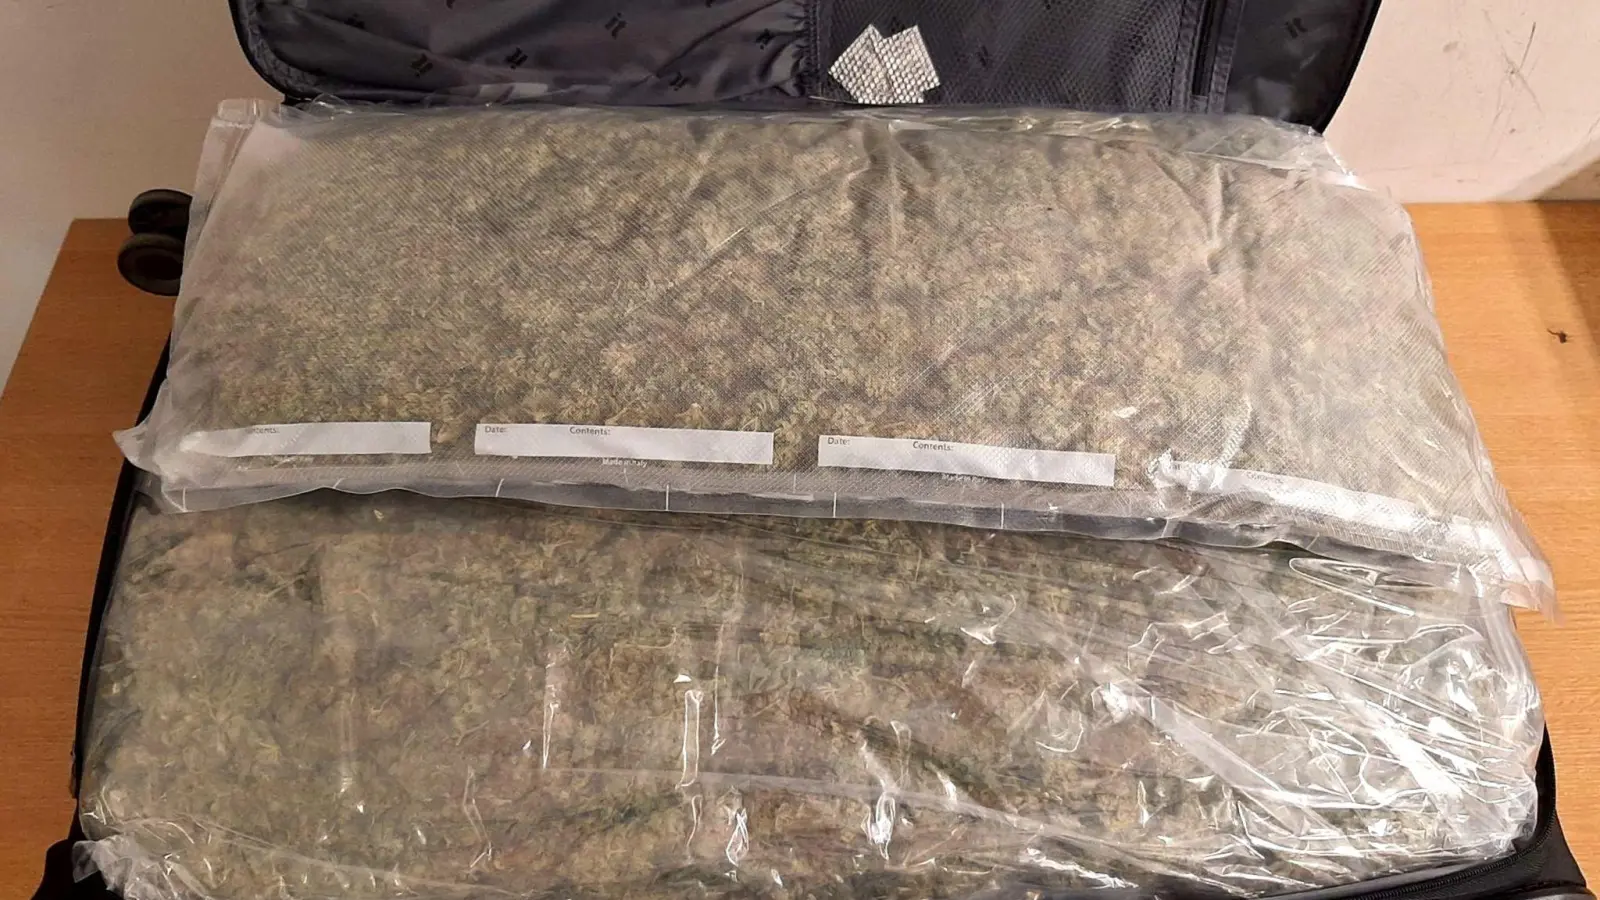 Ein Koffer voller Marihuana: In Tansania ist der mutmaßliche Boss einer Drogenbande aus Brandenburg festgenommen worden. (Foto: -/Bundespolizei/dpa)